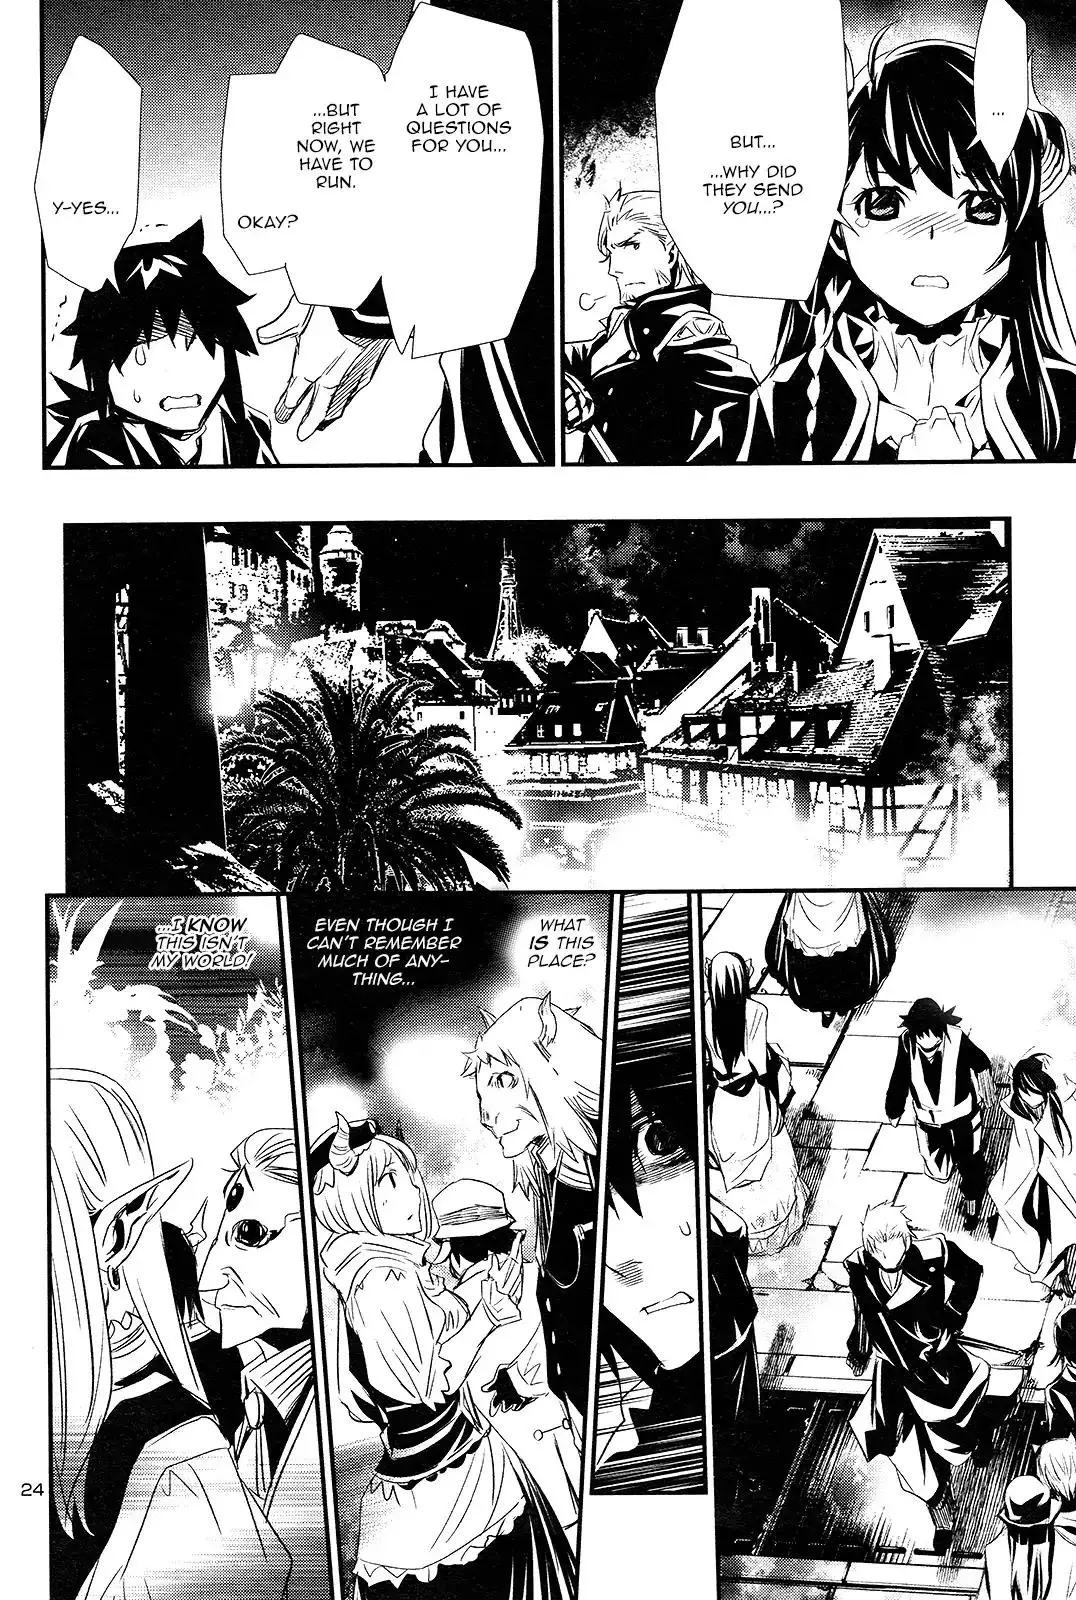 Shinju no Nectar - 1 page 24